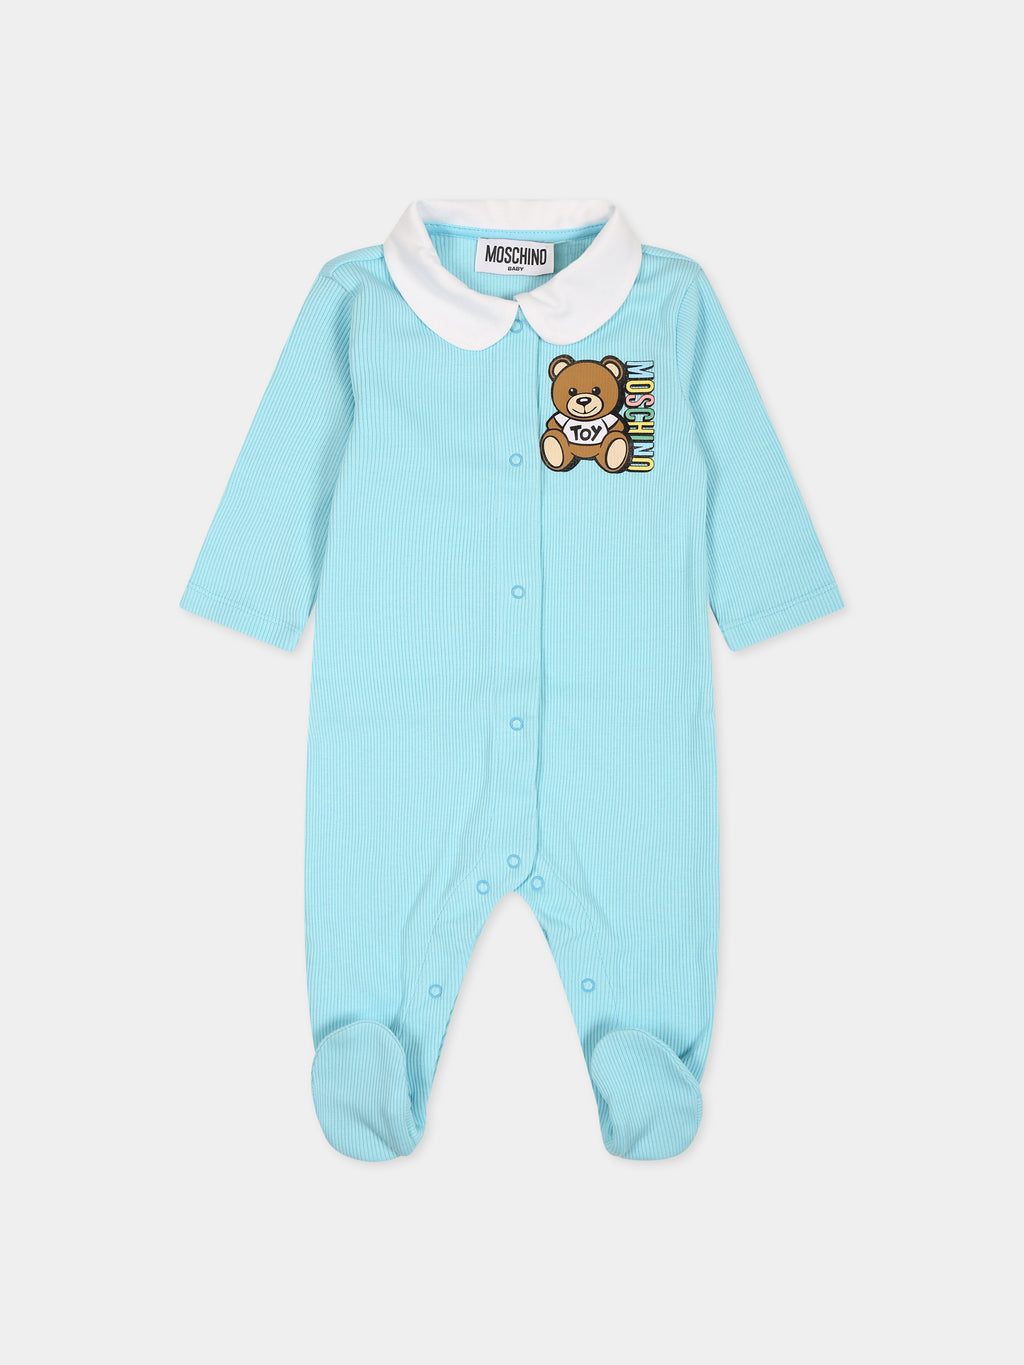 Grenouillère bleu ciel pour bébé garçon avec Teddy Bear et logo